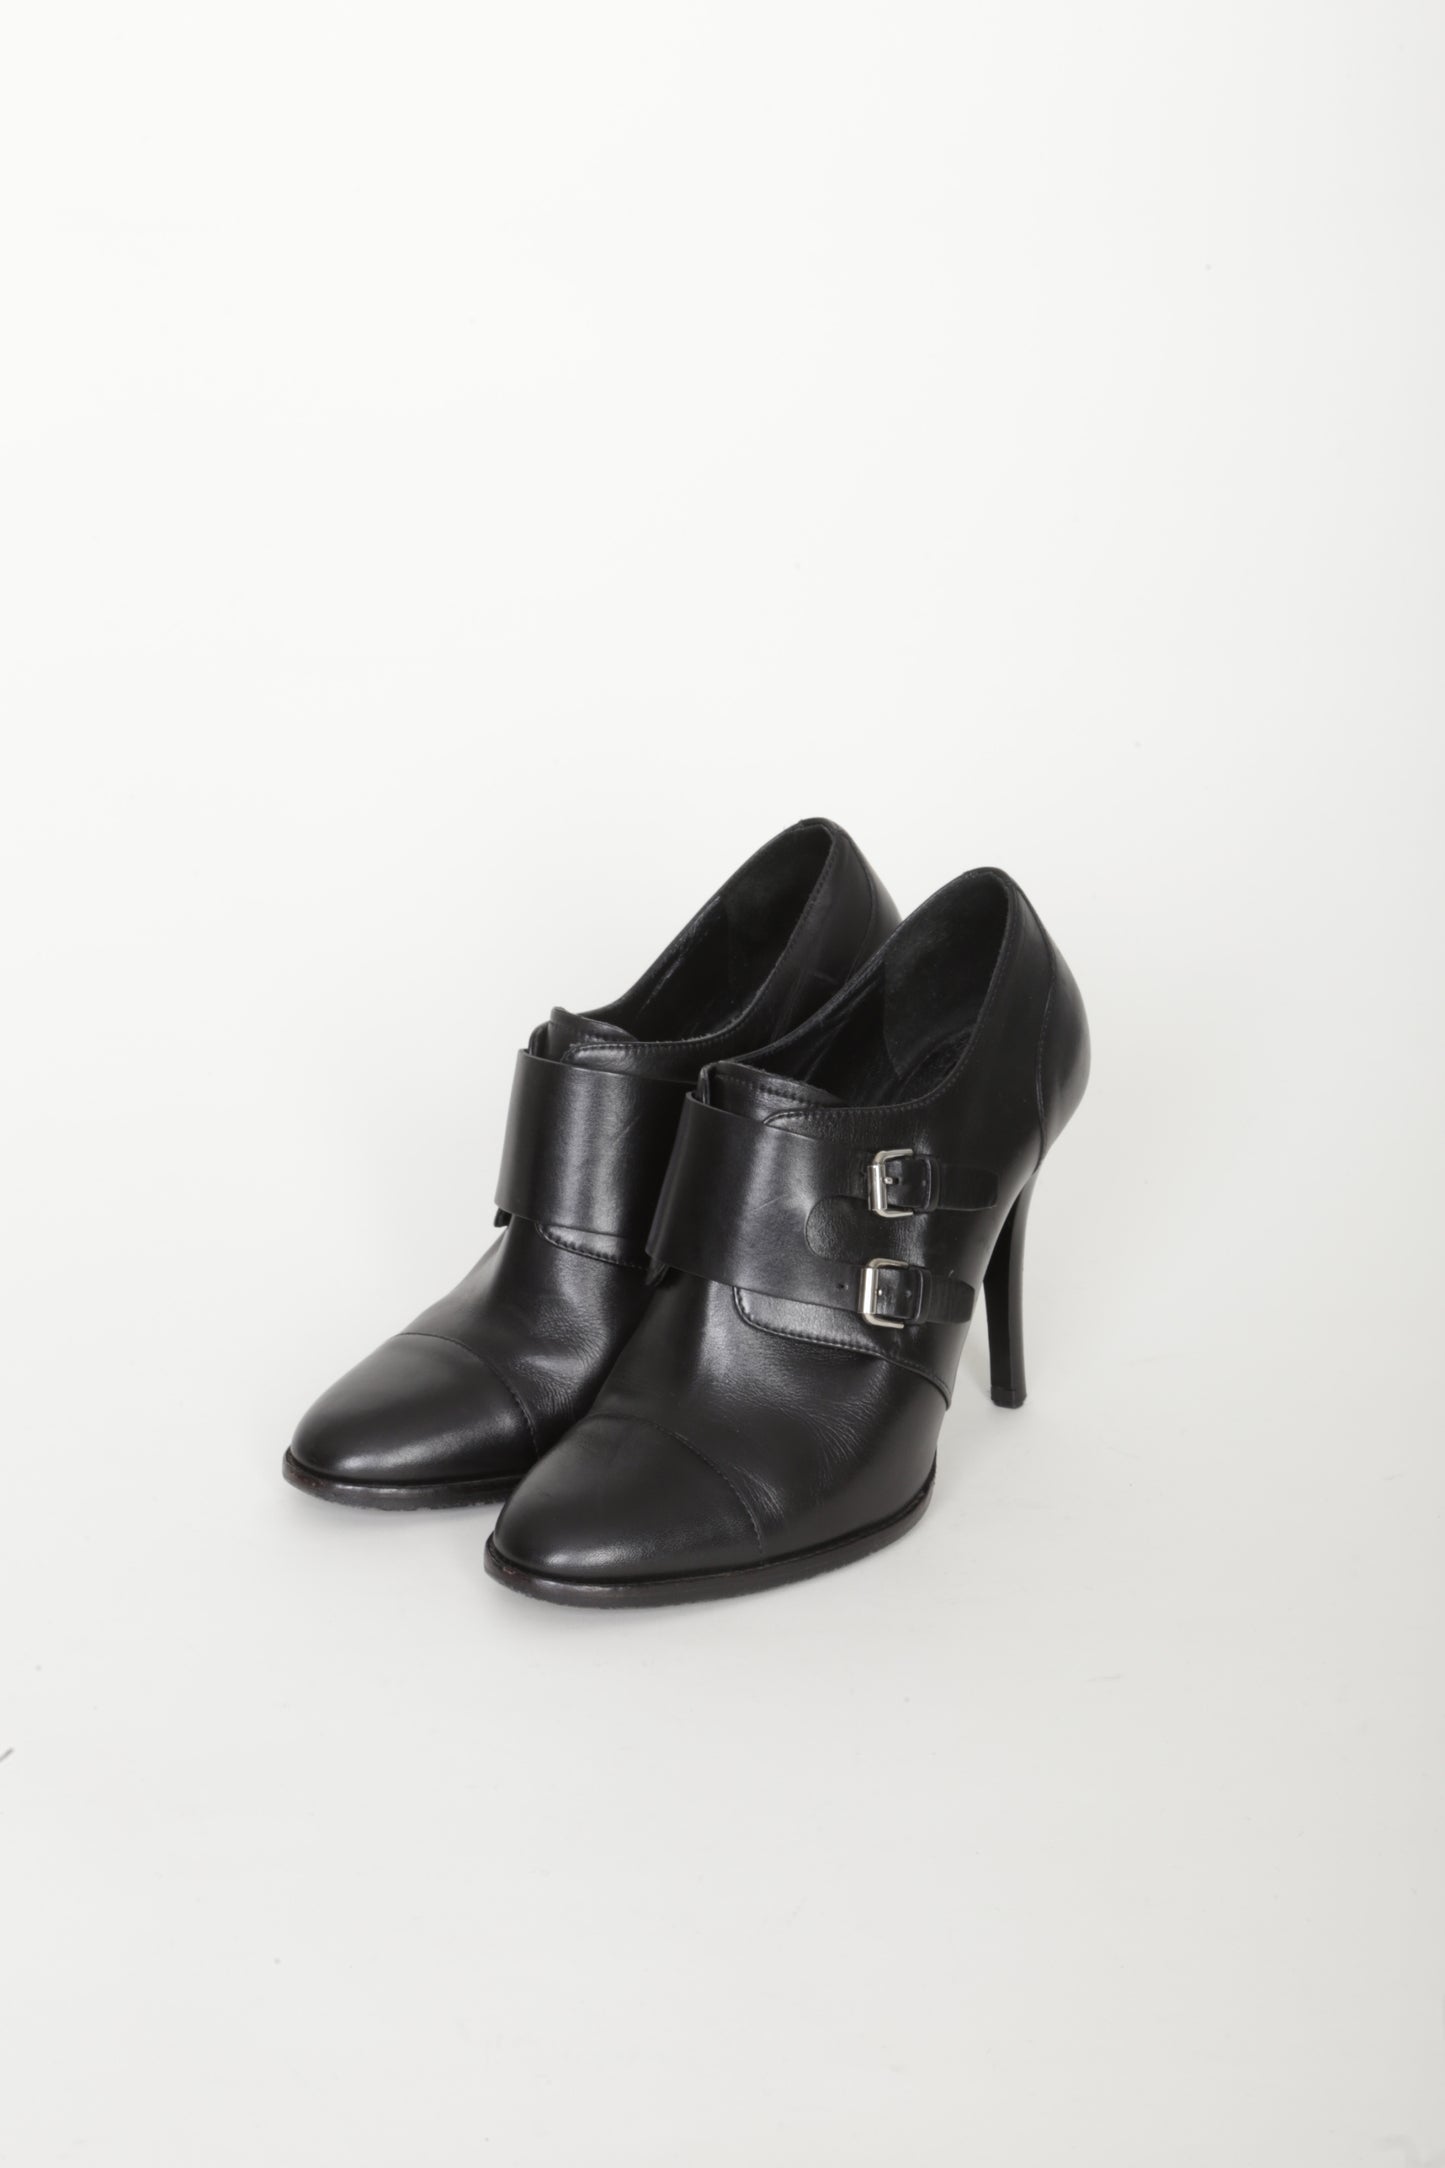 Ralph Lauren Collection Womens Black Heels Size US 7.5